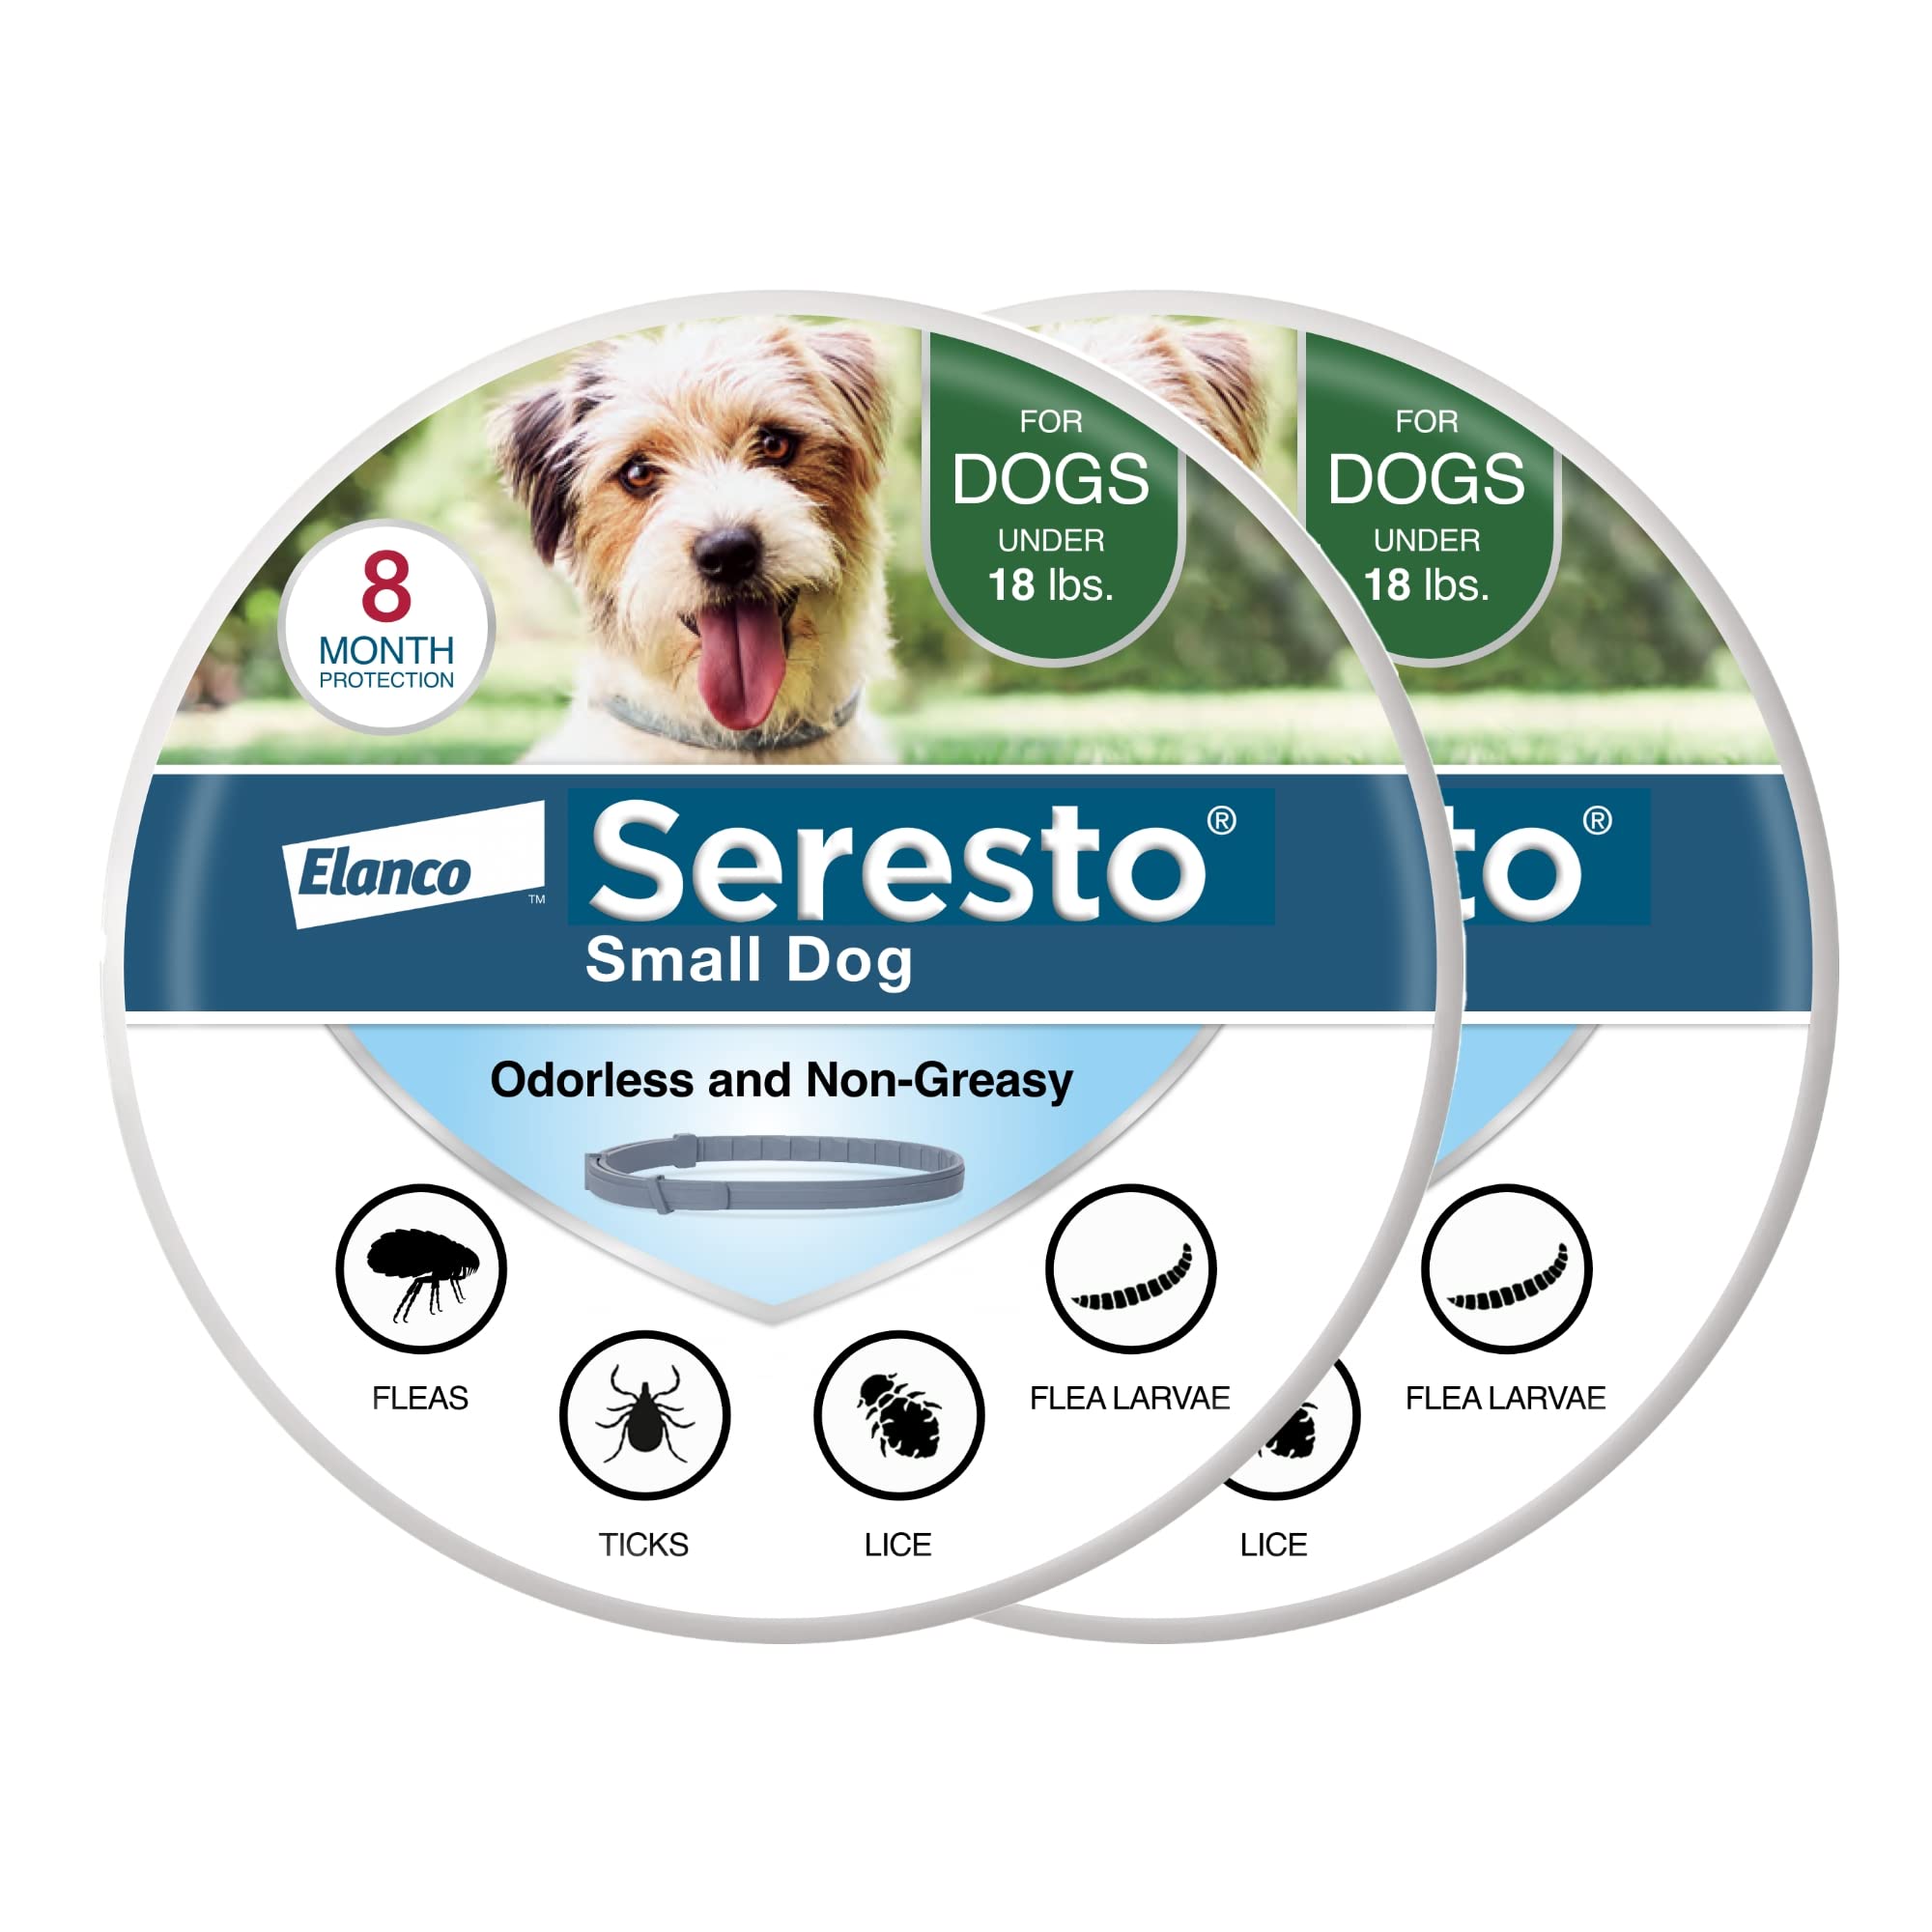 Seresto 小型犬兽医推荐的跳蚤和蜱虫治疗和预防项圈，适用于 18 磅以下的狗狗。 | 2 件装